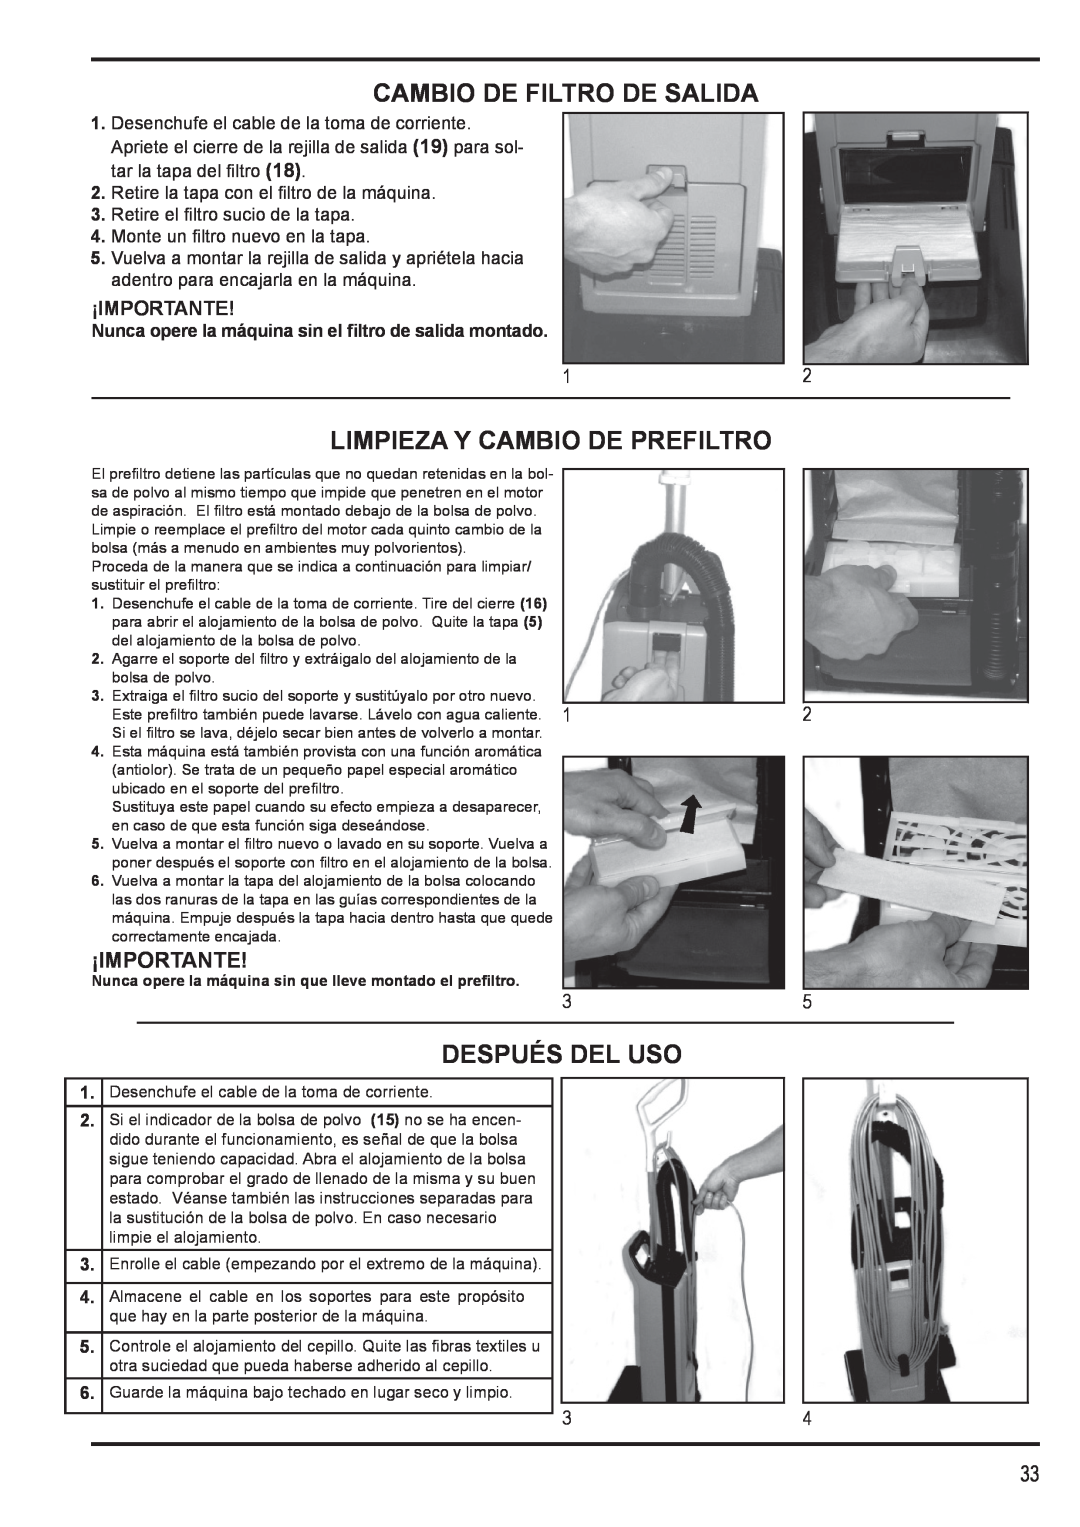 Nilfisk-Advance America 12H manual Cambio De Filtro De Salida, Limpieza Y Cambio De Prefiltro, Después Del Uso, ¡Importante 